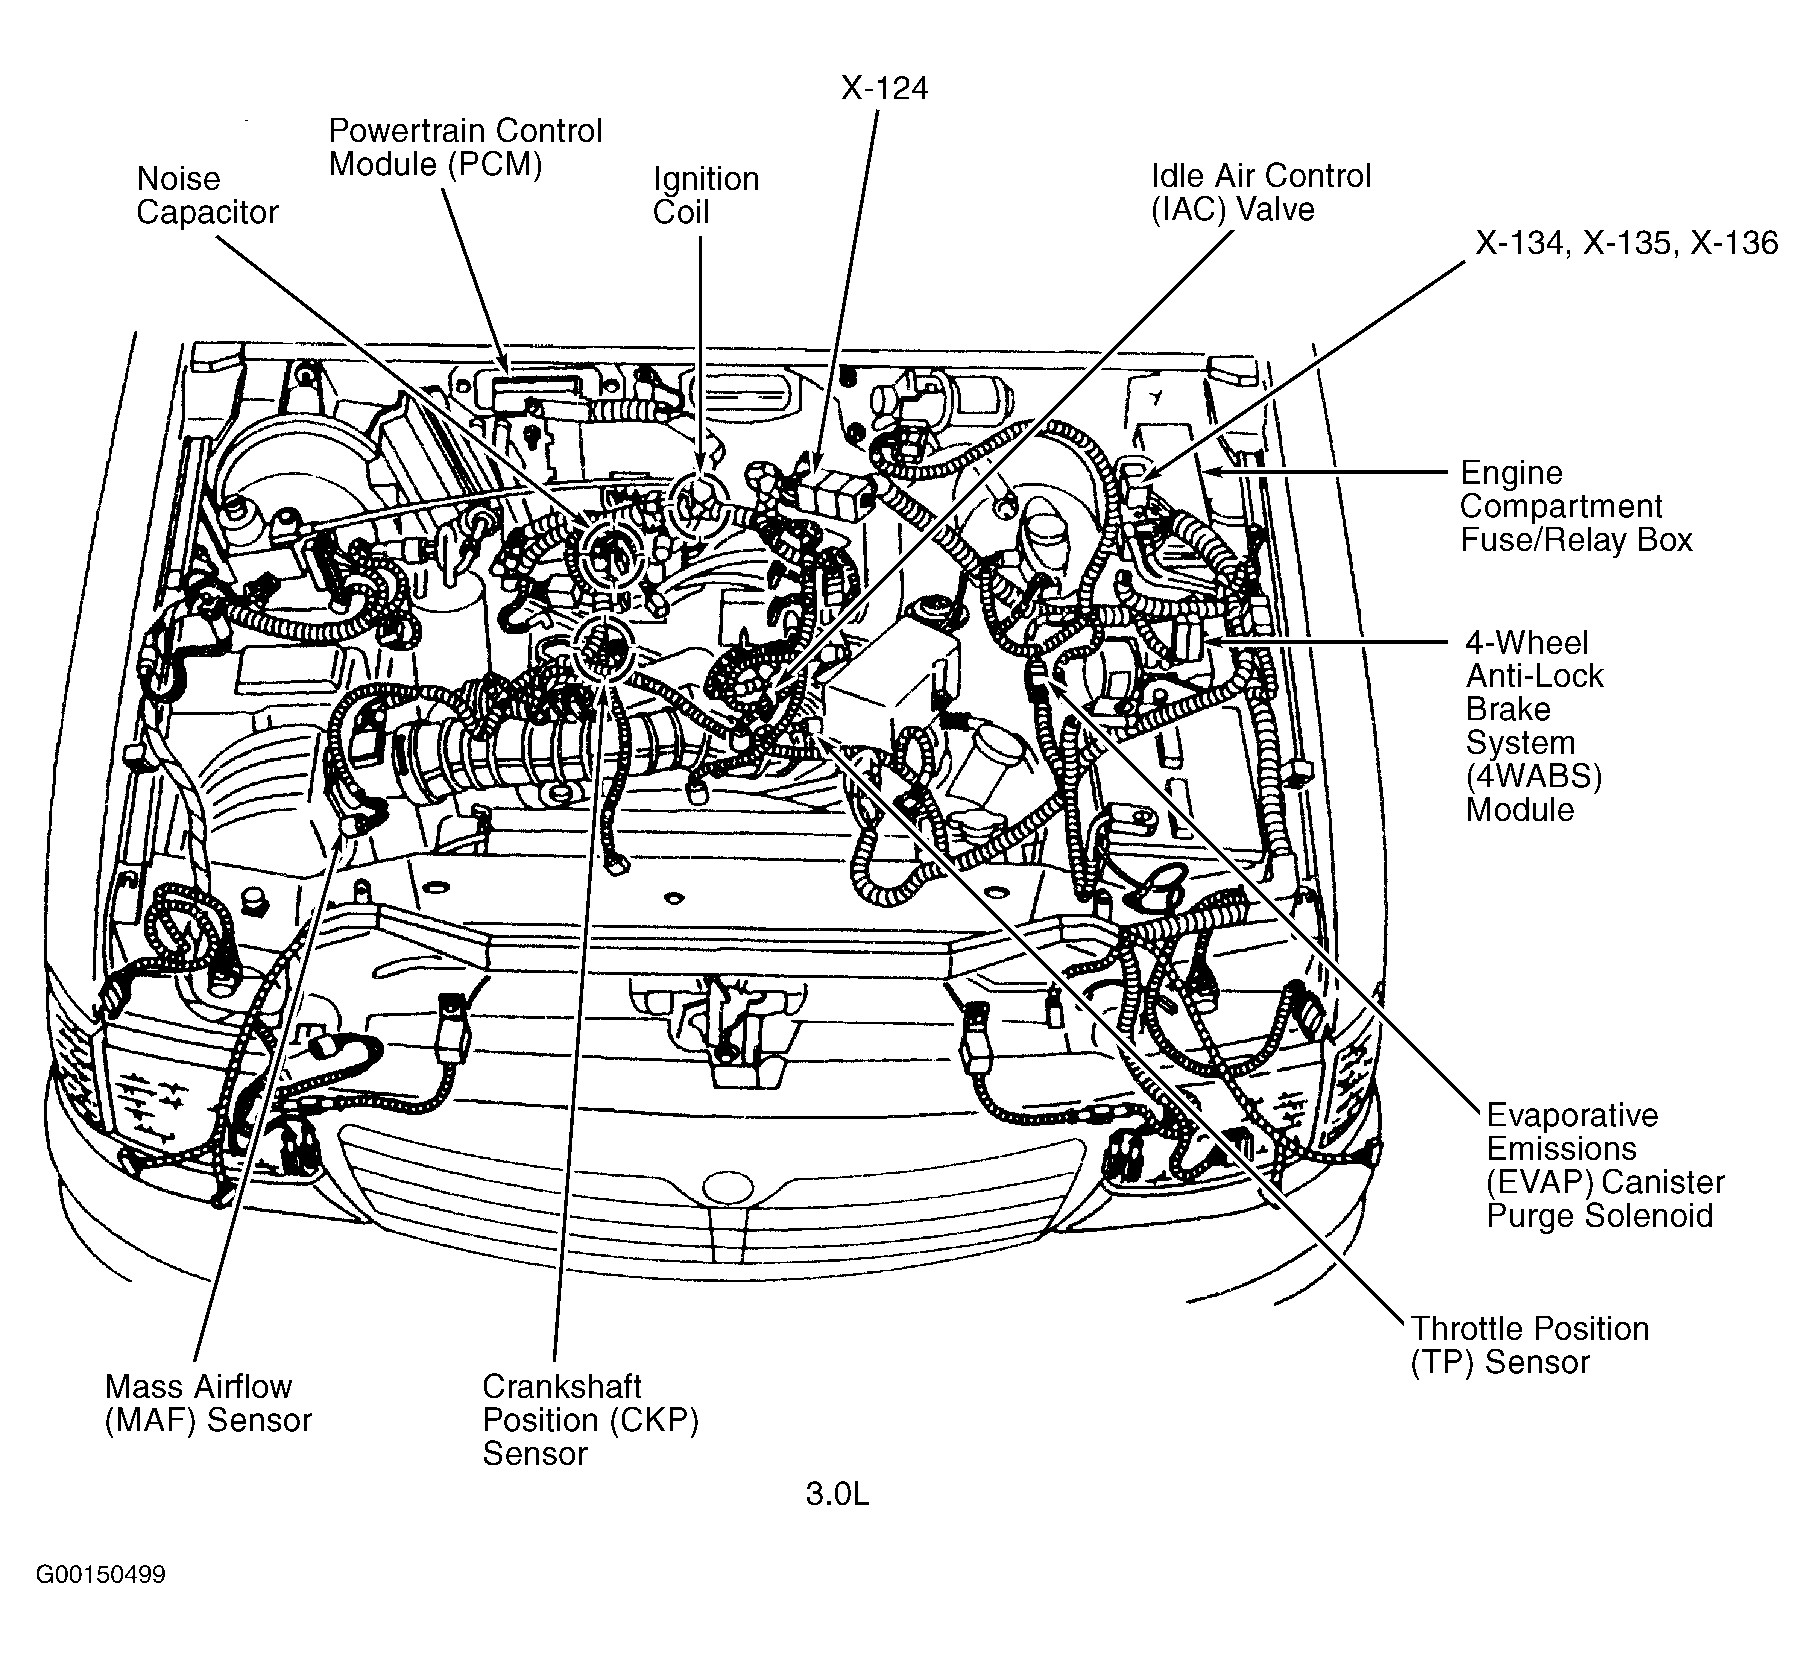 2000 Pontiac Grand Am Engine Diagram 2004 Mazda Rx8 Engine Diagram Mazda Wiring Diagrams Instructions Of 2000 Pontiac Grand Am Engine Diagram